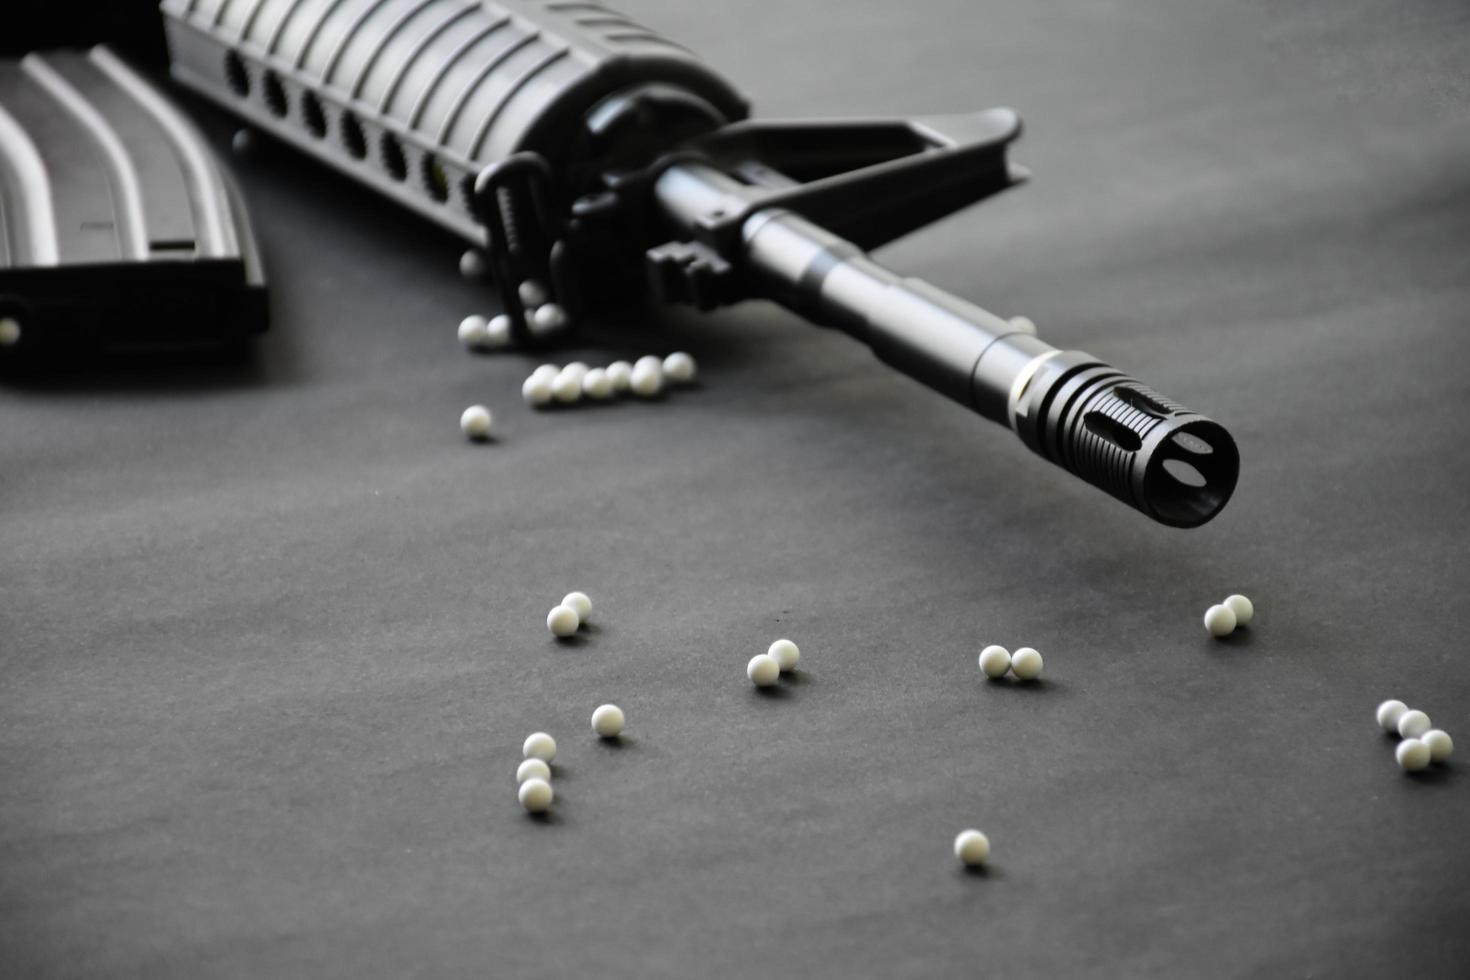 gros plan de balles en plastique blanc de pistolet airsoft ou de pistolet bb sur parquet, mise au point douce et sélective sur les balles blanches. photo